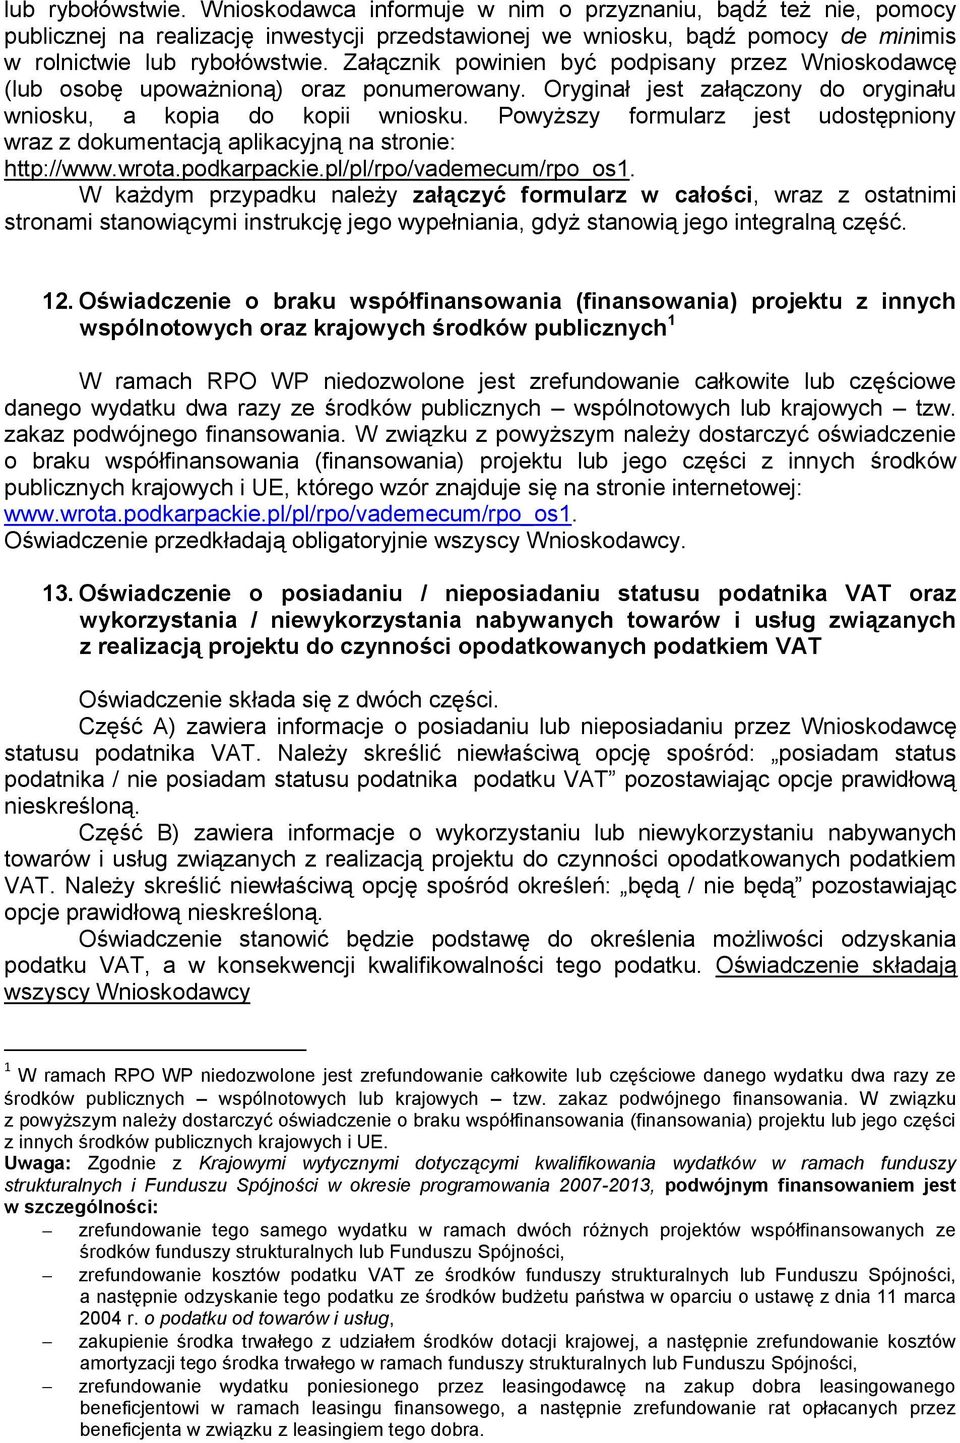 Powyższy formularz jest udostępniony wraz z dokumentacją aplikacyjną na stronie: http://www.wrota.podkarpackie.pl/pl/rpo/vademecum/rpo_os1.